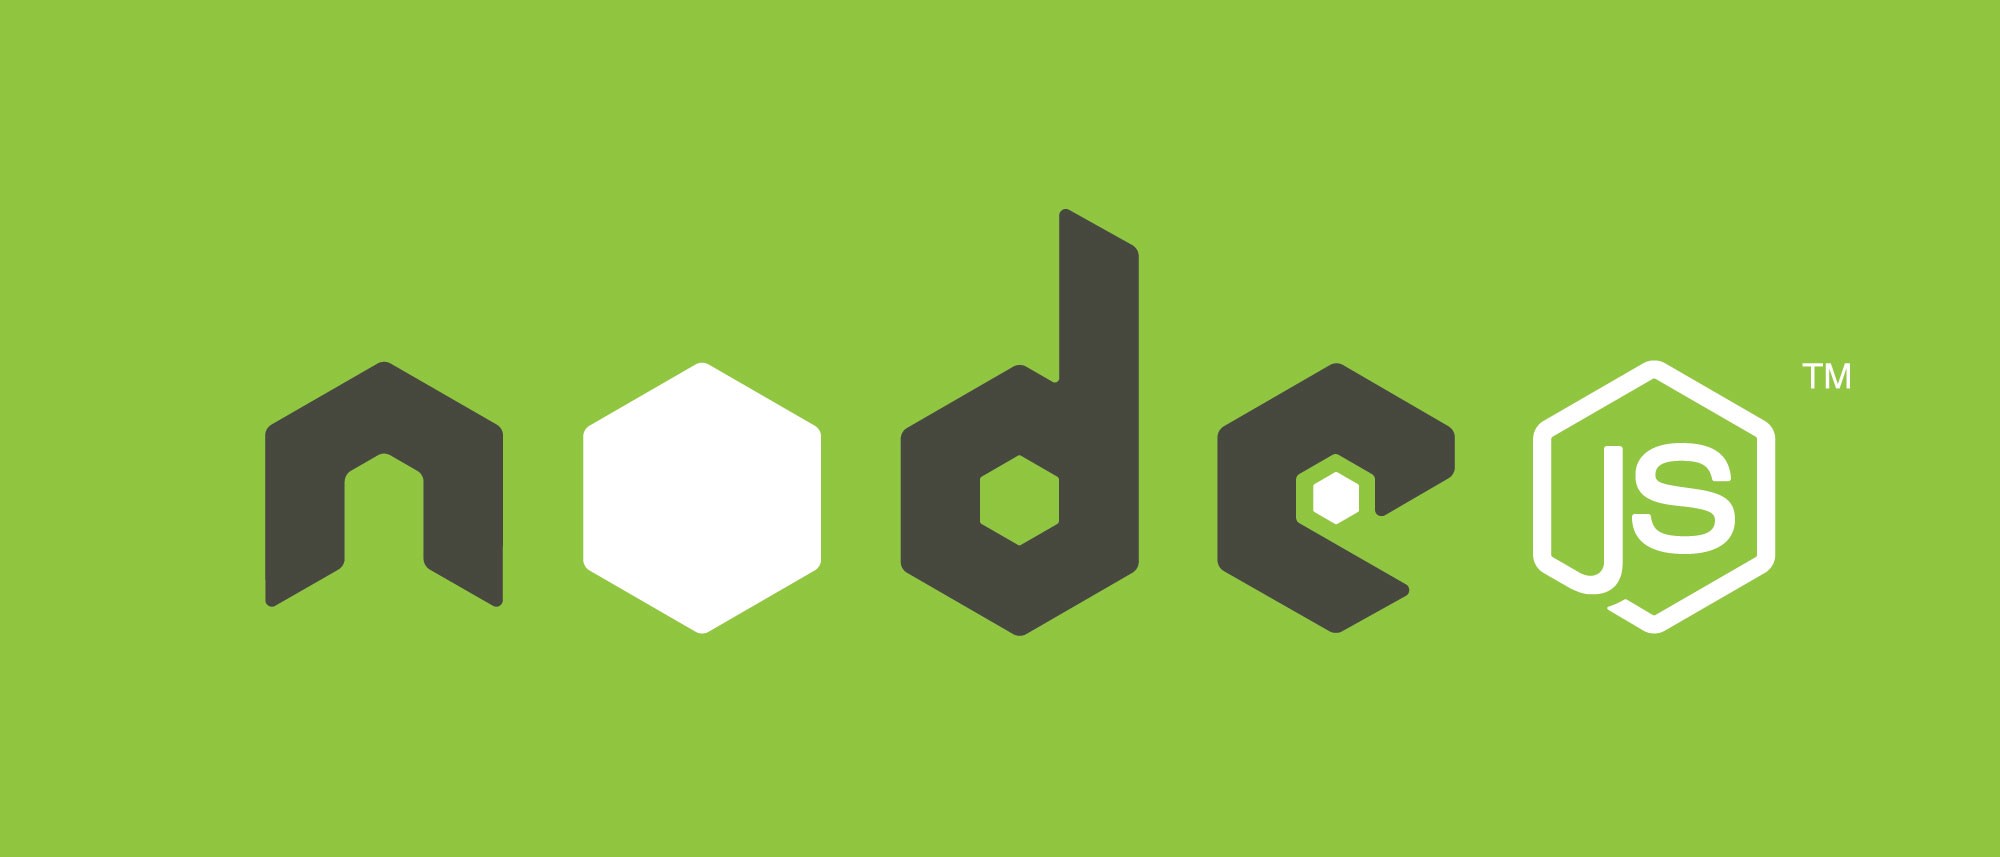 Node.js คือ แพลตฟอร์มฝั่งเซิร์ฟเวอร์ซึ่งสร้างขึ้นจาก JavaScript Engine ของ Google Chrome (V8 Engine) Node.js ได้รับการพัฒนาโดย Ryan Dahl ในปี 2009 และเวอร์ชันล่าสุดคือ v0.10.36 นิยามของ Node.js ที่จัดทำโดยเอกสารทางการของมัน มีดังต่อไปนี้ -

Node.js เป็นแพลตฟอร์มที่สร้างขึ้นจากรันไทม์ JavaScript ของ Chromeเพื่อให้สามารถสร้างแอปพลิเคชันเครือข่ายที่รวดเร็วและปรับขนาดได้ Node.js ใช้โมเดล I / O แบบไม่มีการบล็อกที่อิงกับเหตุการณ์ซึ่งทำให้มีน้ำหนักเบาและมีประสิทธิภาพเหมาะสำหรับแอ็พพลิเคชันเรียลไทม์ที่ใช้ข้อมูลจำนวนมากซึ่งทำงานบนอุปกรณ์แบบกระจาย

Node.js เป็นโอเพ่นซอร์สสภาพแวดล้อมรันไทม์ข้ามแพลตฟอร์มสำหรับการพัฒนาแอ็พพลิเคชันฝั่งเซิร์ฟเวอร์และระบบเครือข่าย แอ็พพลิเคชัน Node.js เขียนด้วย JavaScript และสามารถรันได้ภายใน Node.js runtime บน OS X, Microsoft Windows และ Linux

นอกจากนี้ Node.js ยังมีไลบรารีที่หลากหลายของโมดูล JavaScript ต่างๆซึ่งช่วยลดความยุ่งยากในการพัฒนาแอ็พพลิเคชันเว็บโดยใช้ Node.js ในระดับดี

Node.js = Runtime Environment + JavaScript Library

